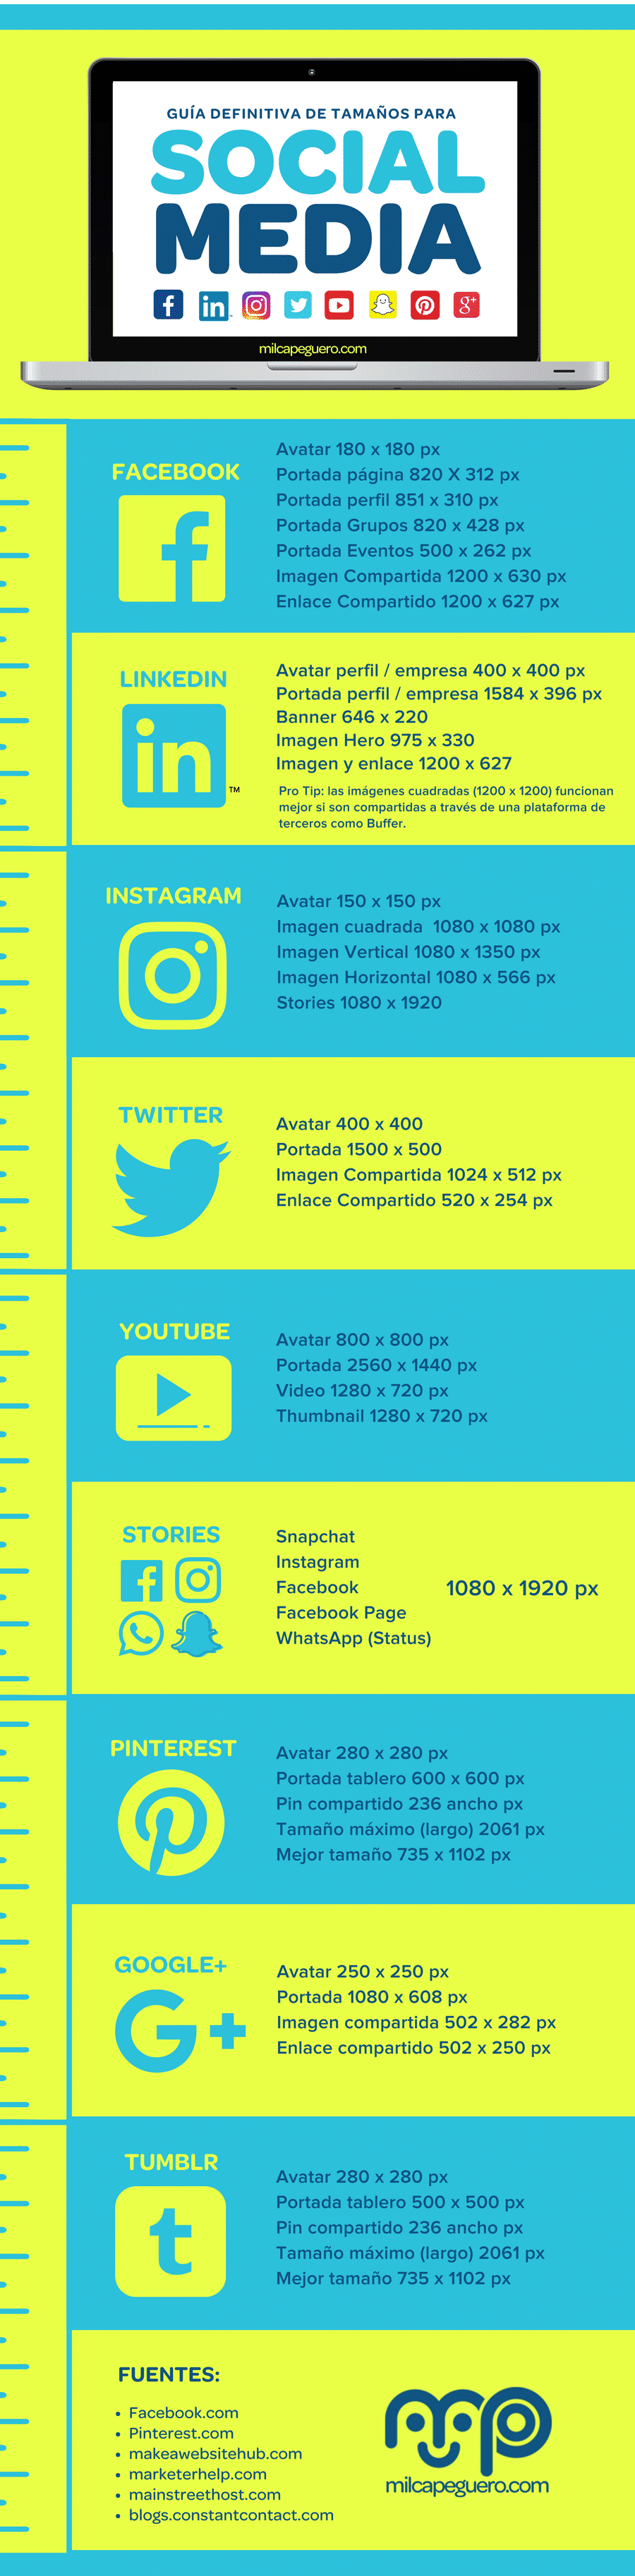 #Infografía: La Guía definitiva de tamaños para Social Media